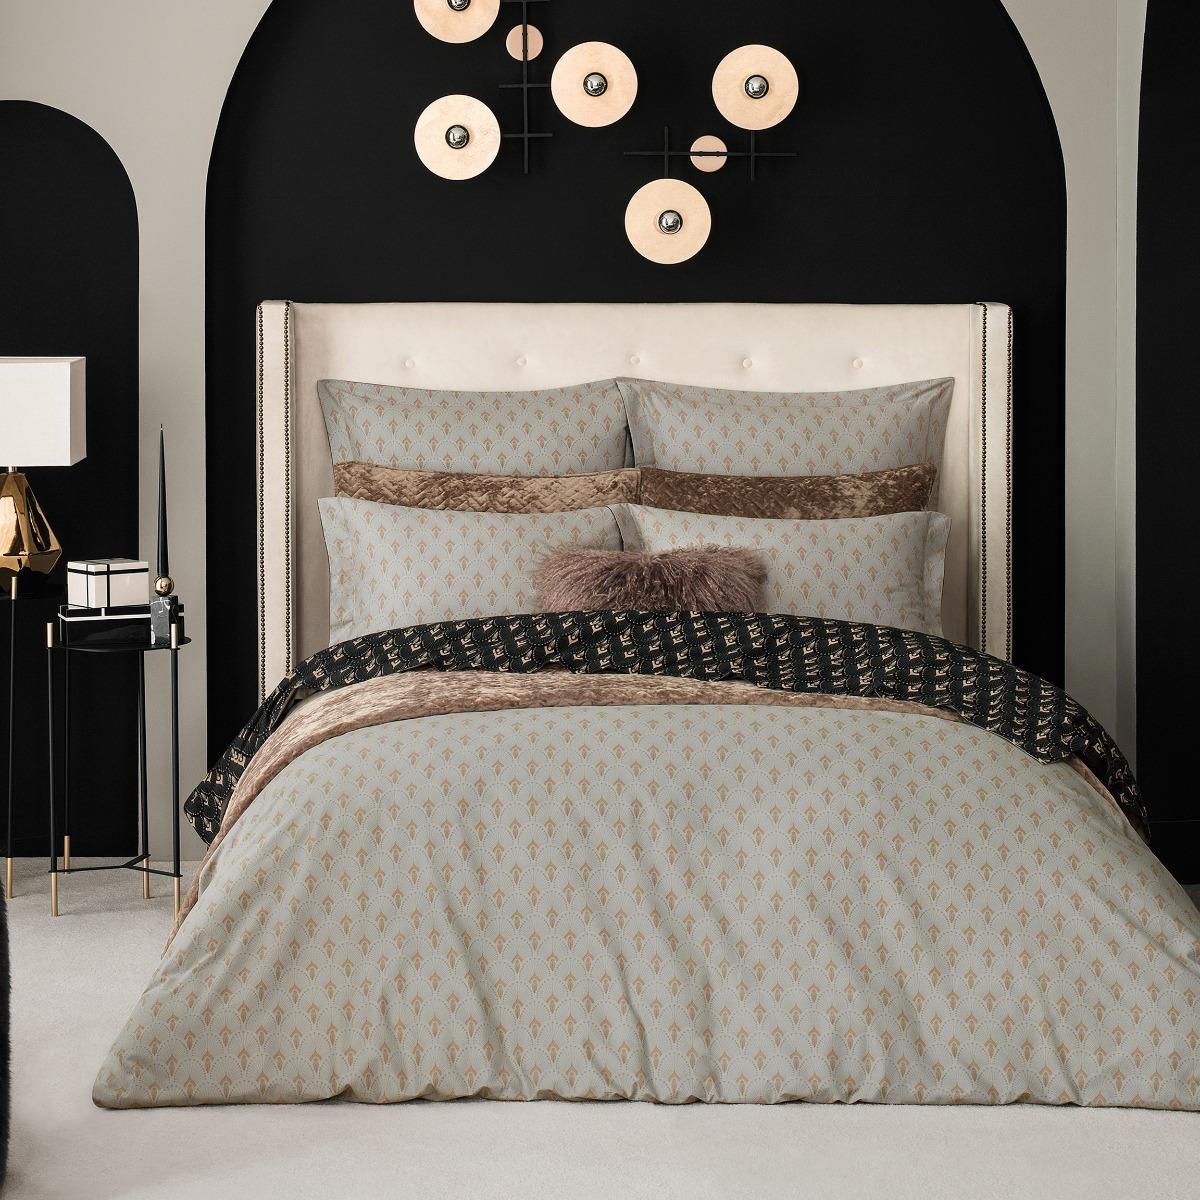 Комплект постельного белья Togas Ландер чёрный с серым Кинг сайз, цвет серый, размер Кинг сайз - фото 1